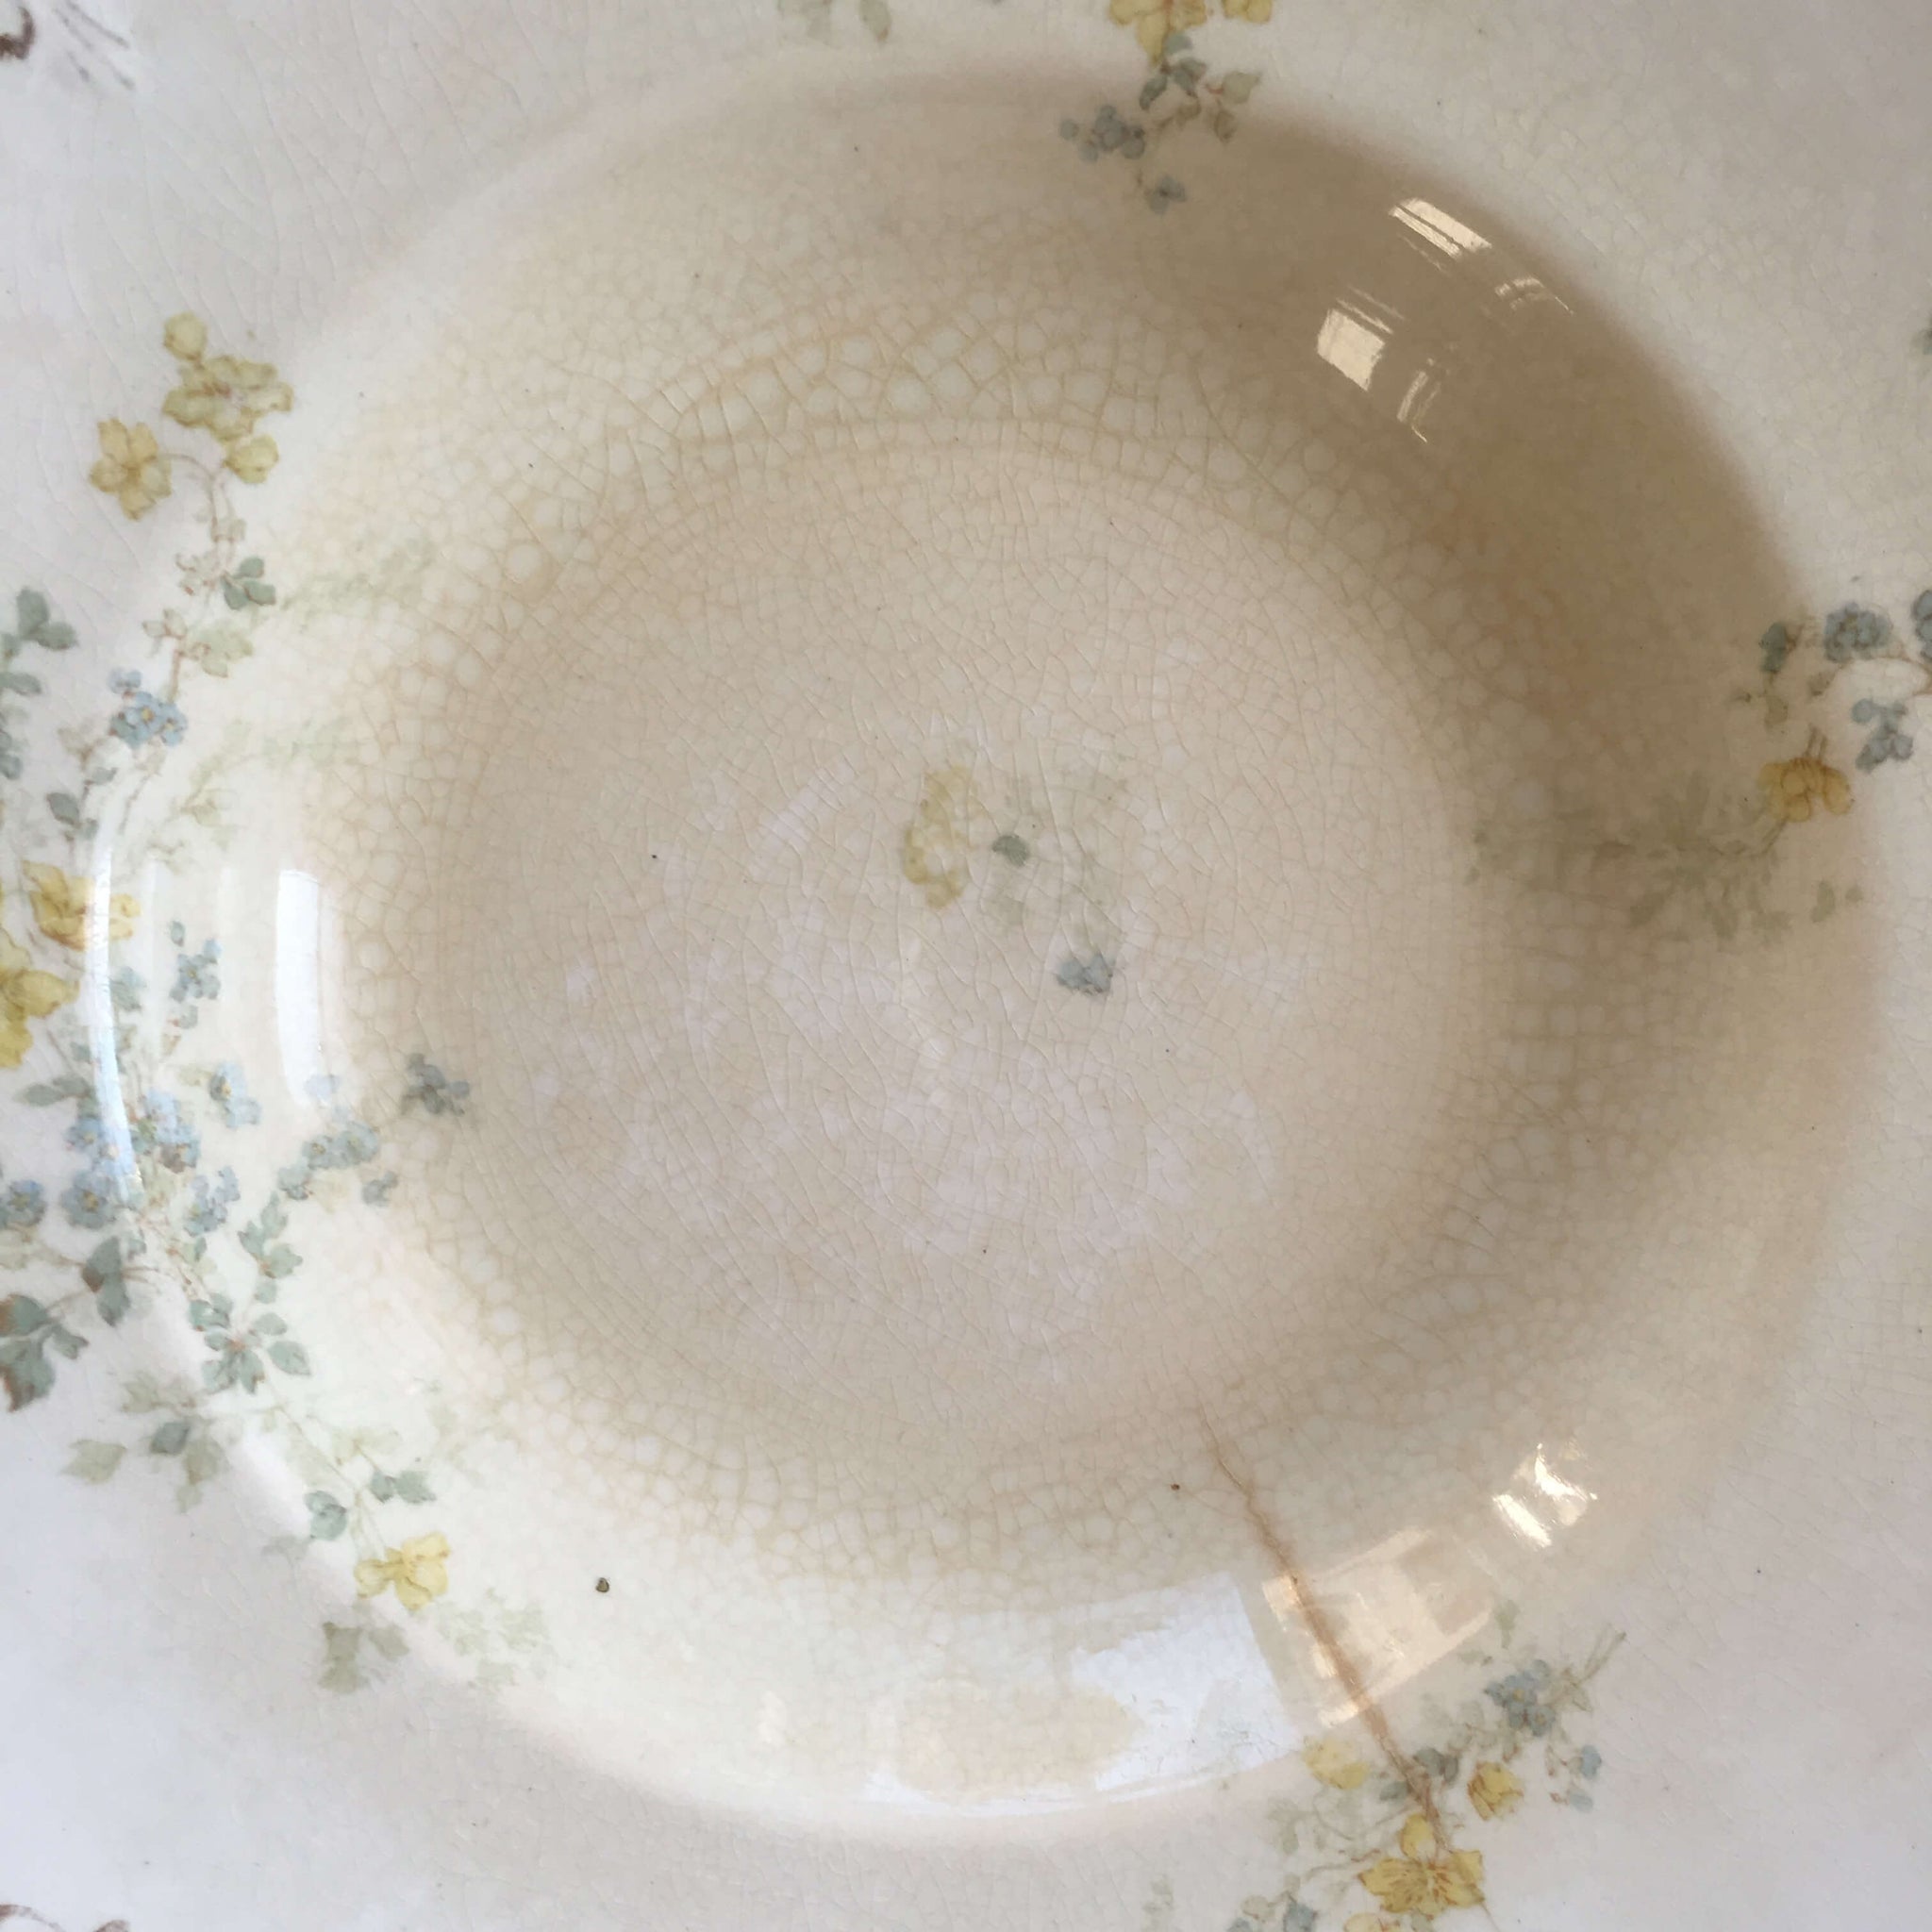 Antique W.H. Grindley Soup Bowls - Set of Five - Handpainted Semi Porcelain circa 1897